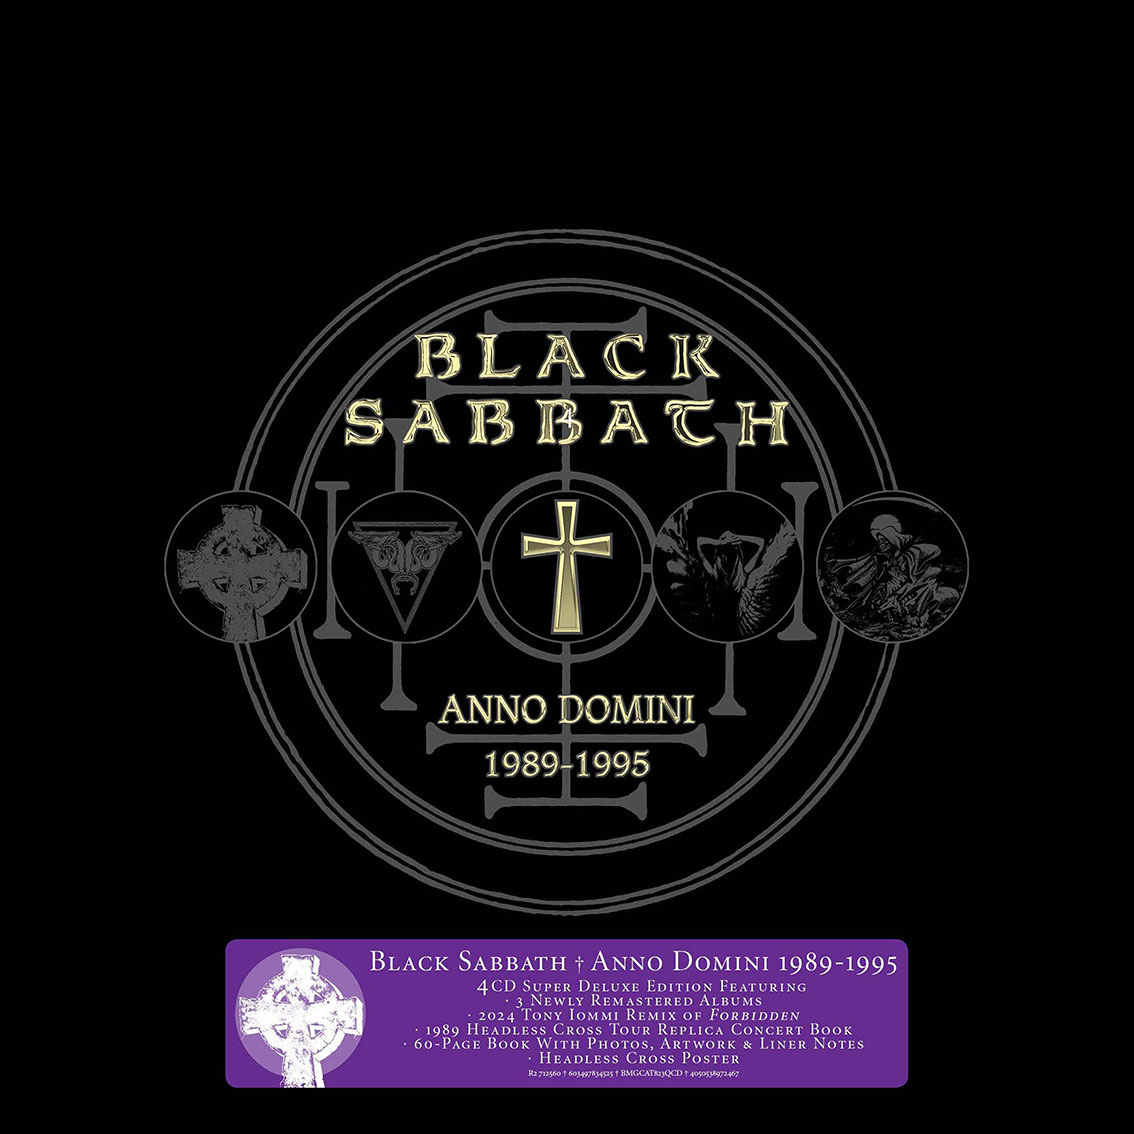 Black Sabbath_Anno Domini 89-95 Deluxe Box_4CD_4050538972467_FRONT